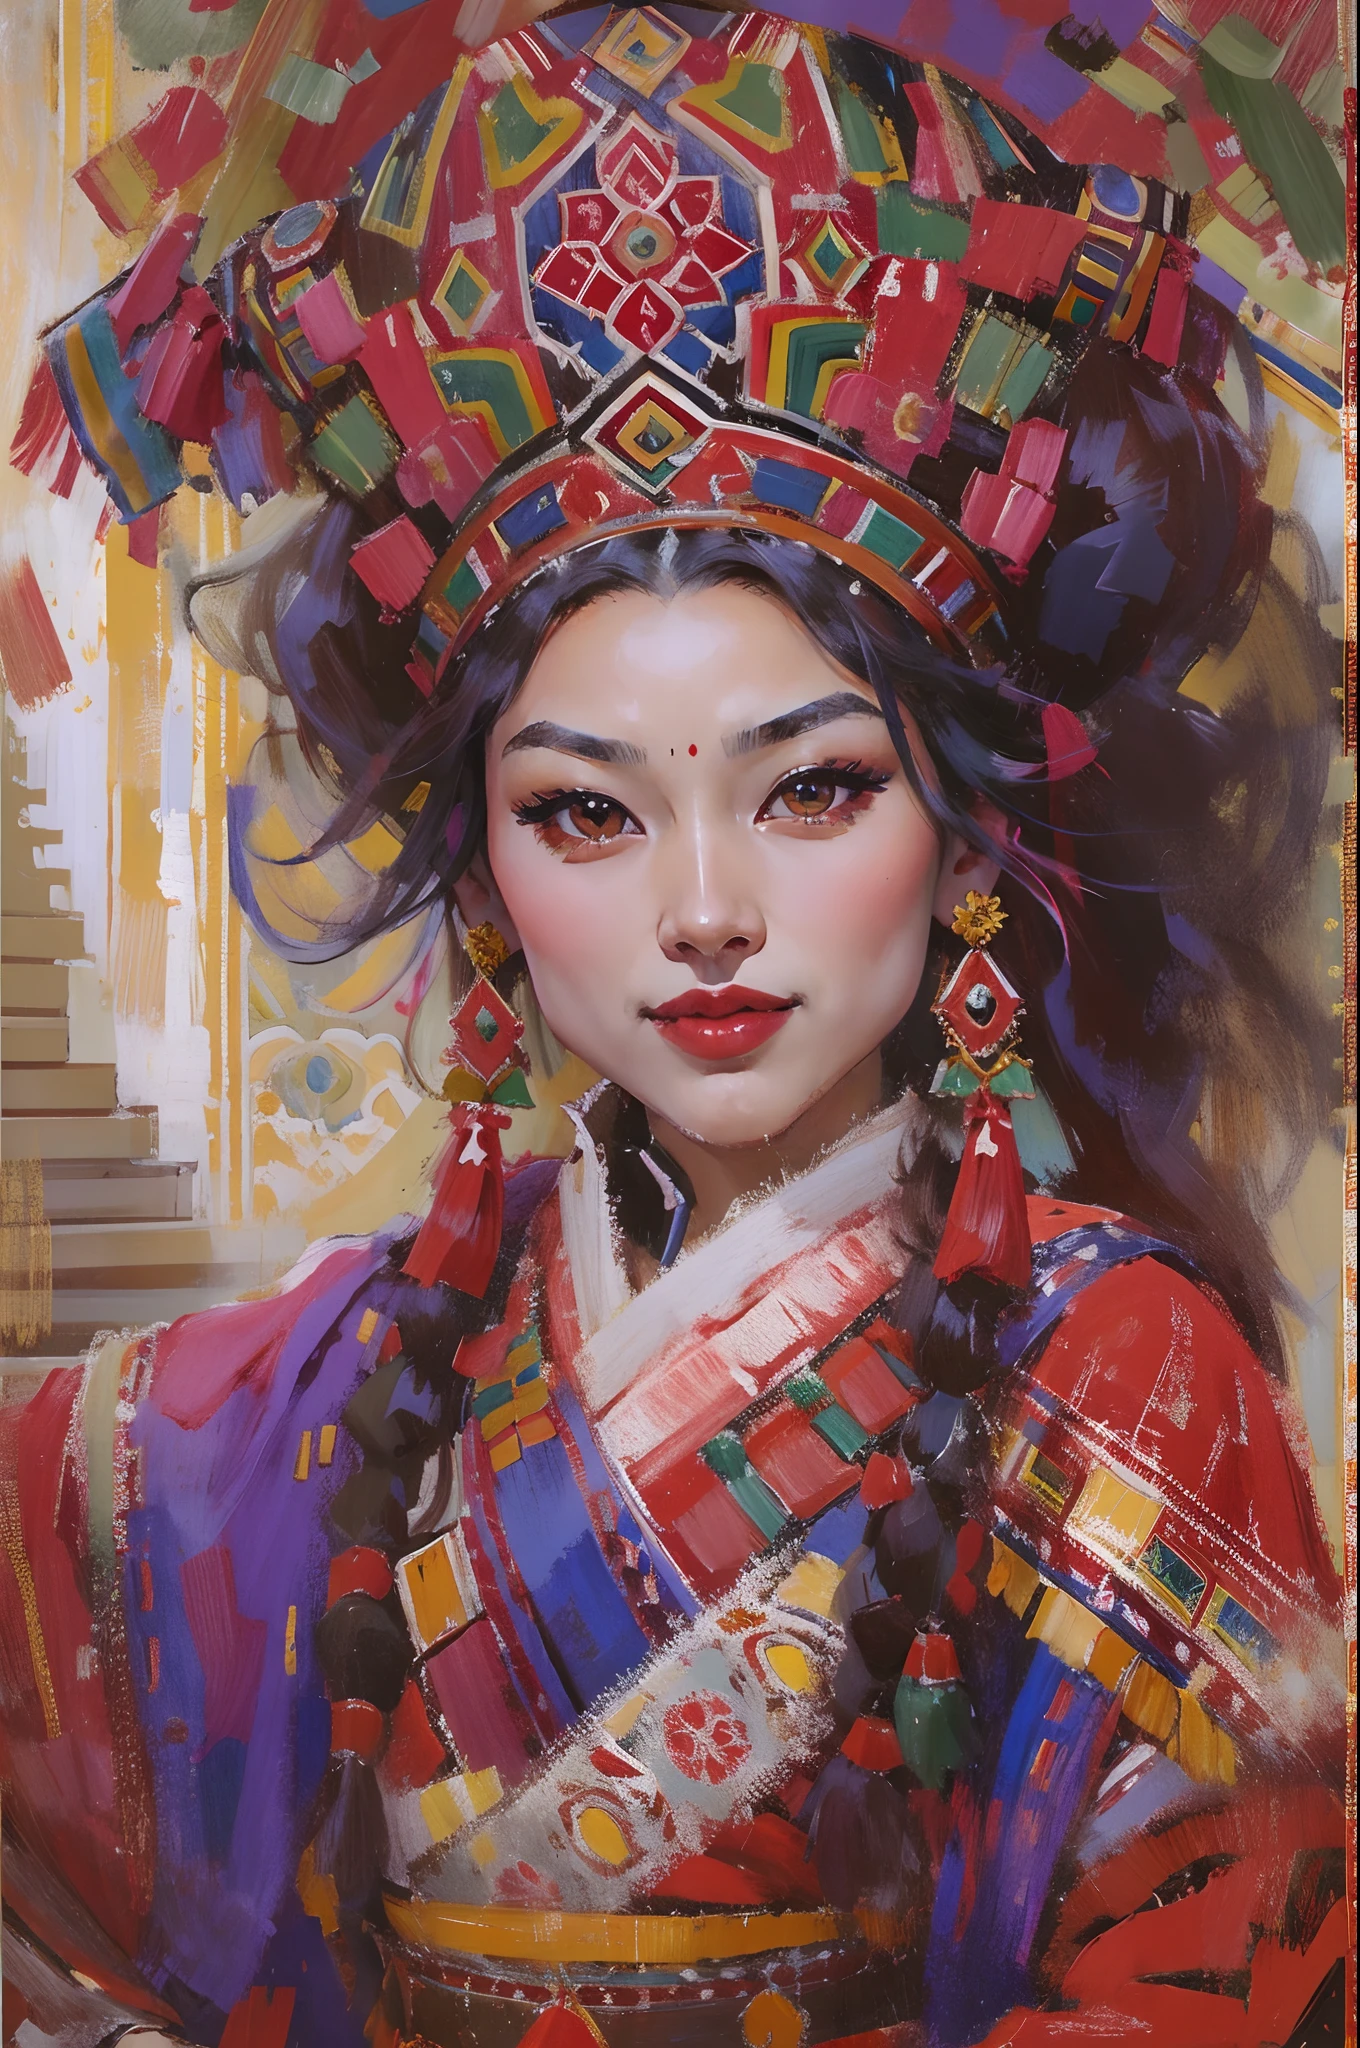 Potala-Palast, Lhasa，Schönes tibetisches Mädchen，Tibetische Kostüme，ssmile，Weiße Zähne werden freigelegt，tanzen，langes schwarzes Haar，rotes Gesicht，Ölgemälde，Tinten，Acrylmalerei，Meisterstück，Renaissance-Stil，beste Qualität，Eine hohe Auflösung，superfein，Augen detailliert，Gesicht detailliert，Haardetail，genau，Klare Nahaufnahme mit Blick